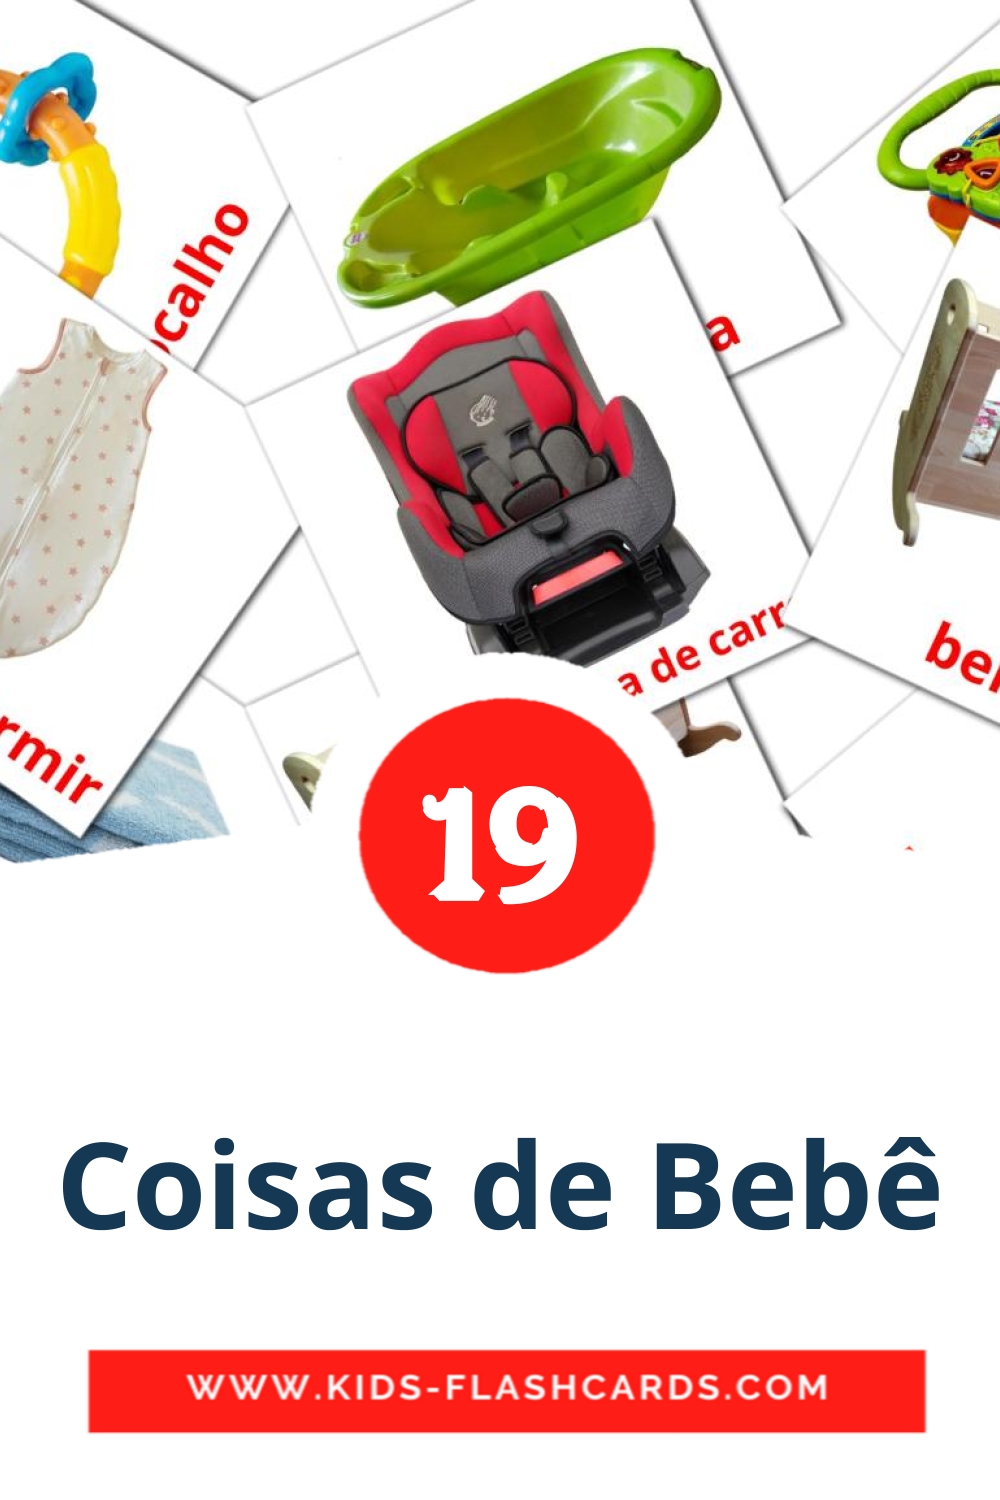 19 tarjetas didacticas de Coisas de Bebê para el jardín de infancia en portugués